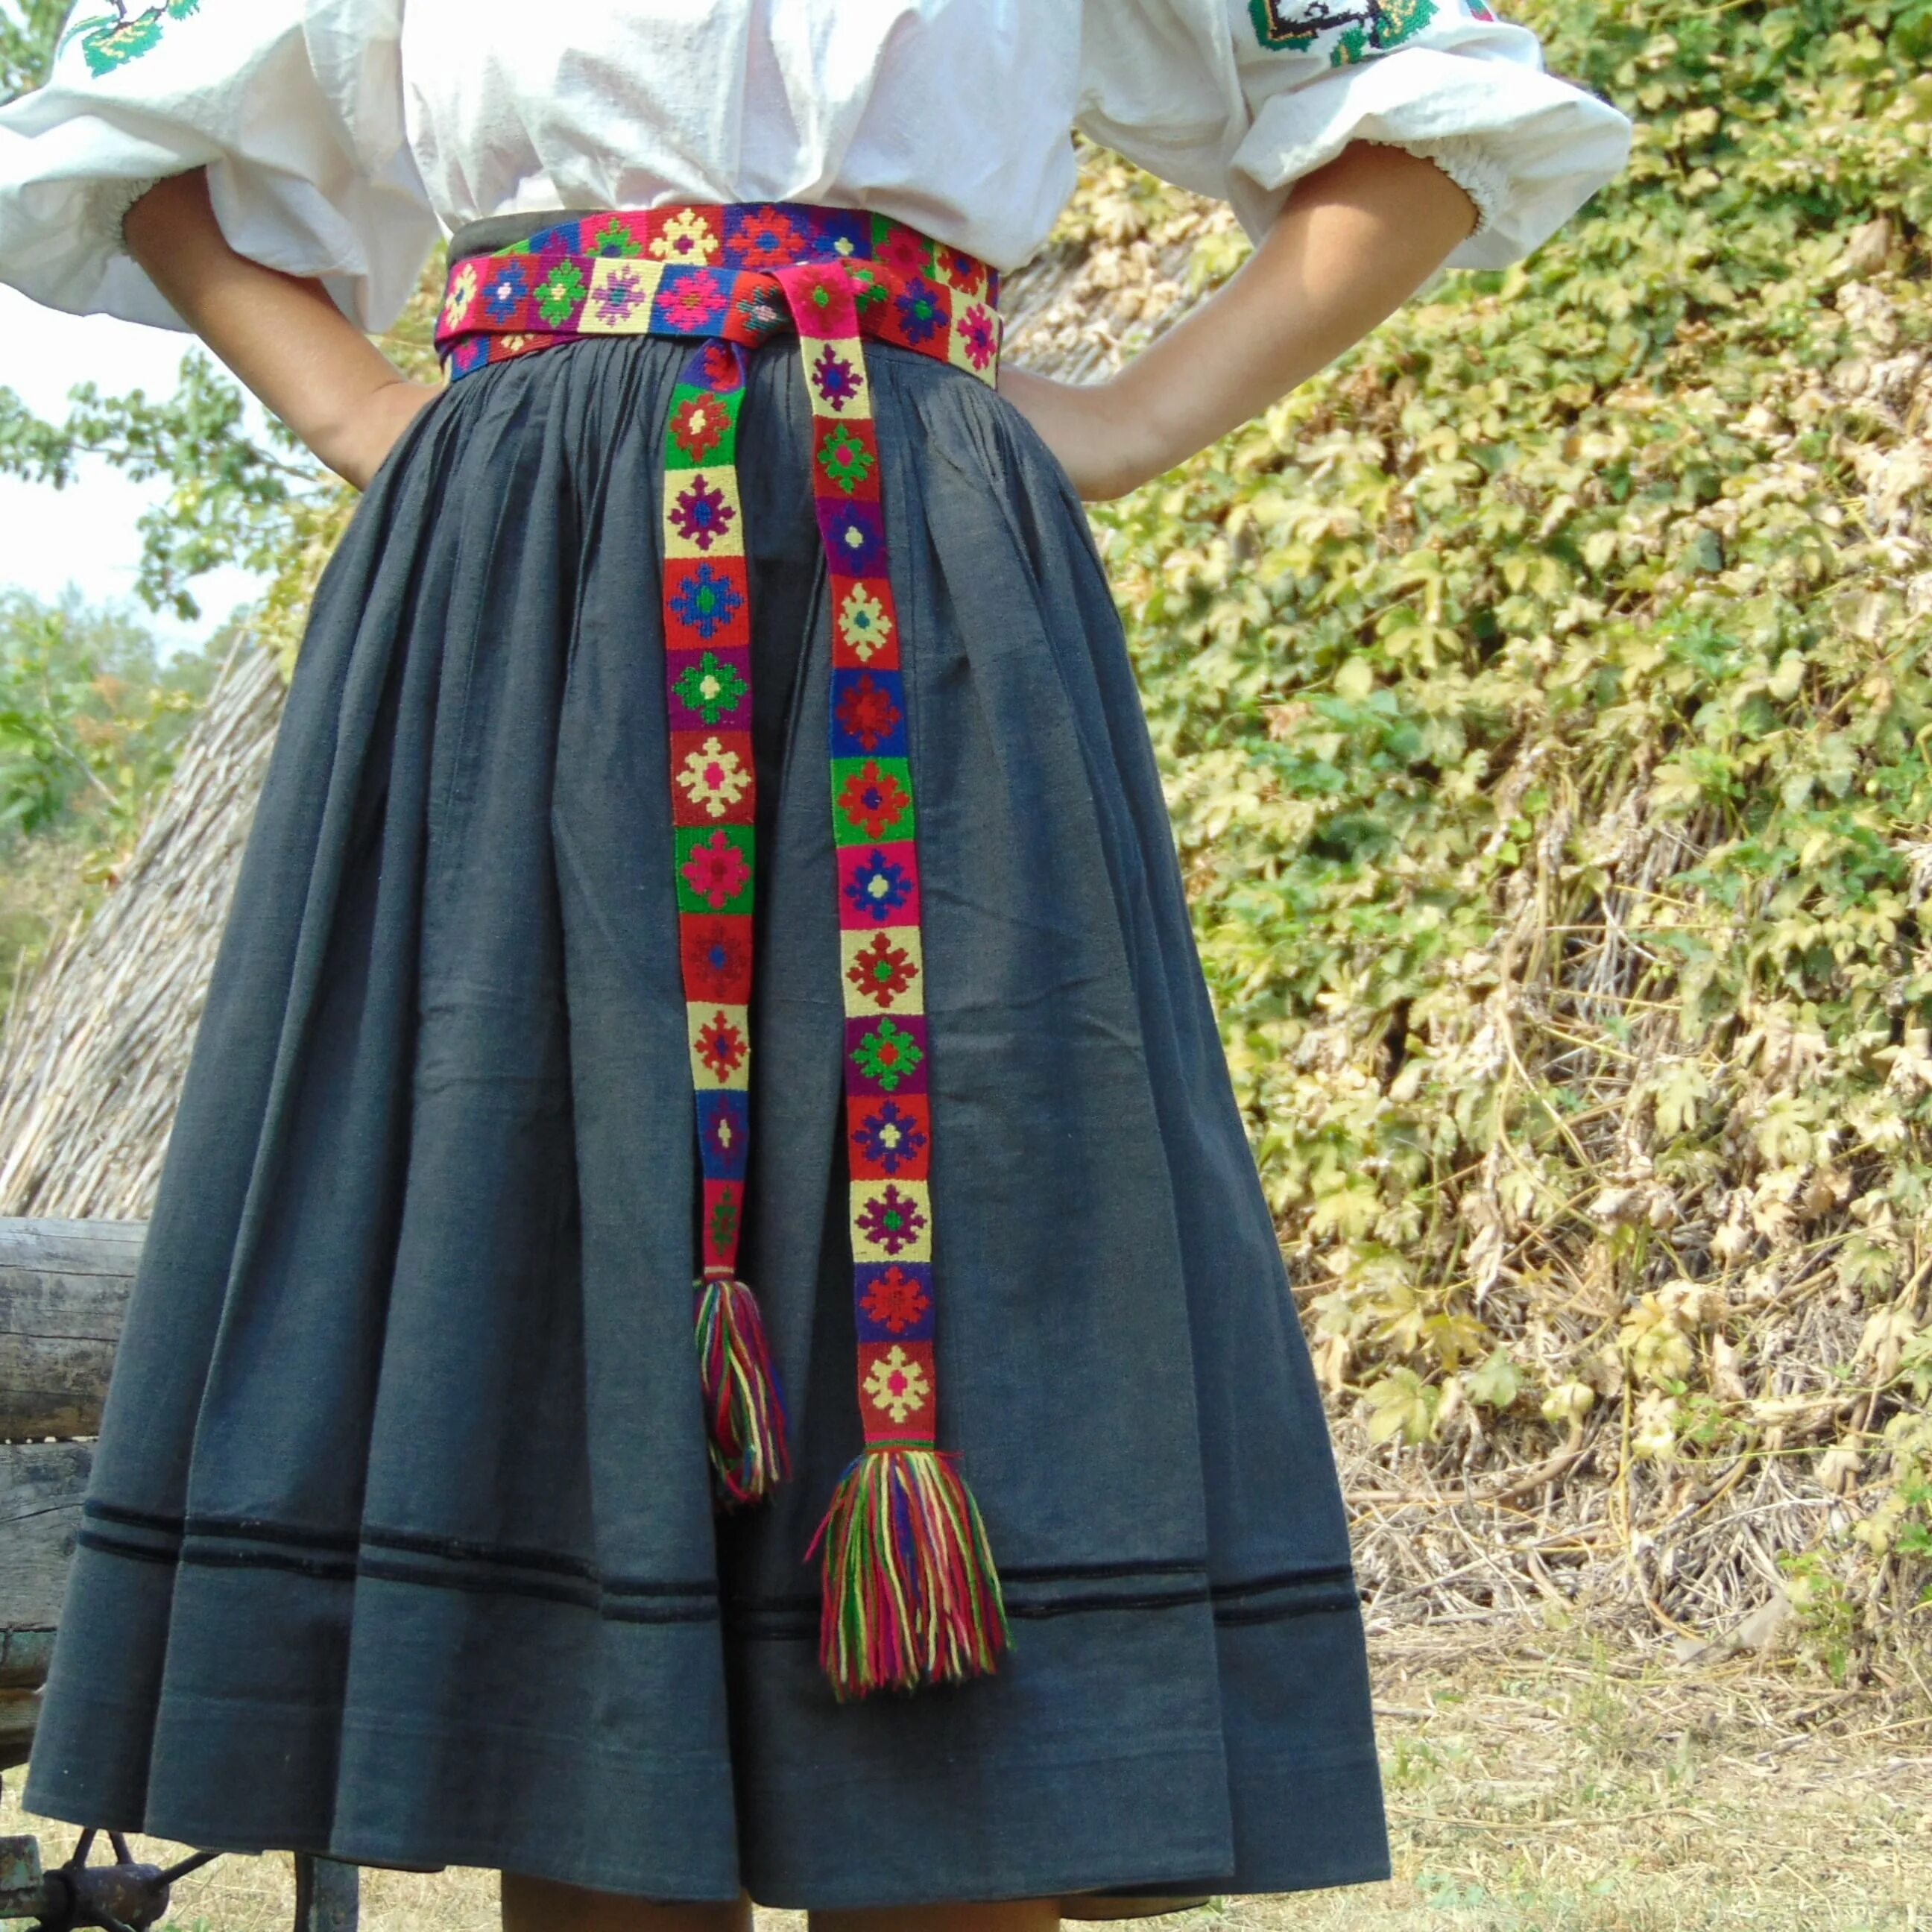 Юбки народных костюмов. Юбка народная. Юбка в народном костюме. Украинская юбка. Народная вышивка на юбке.